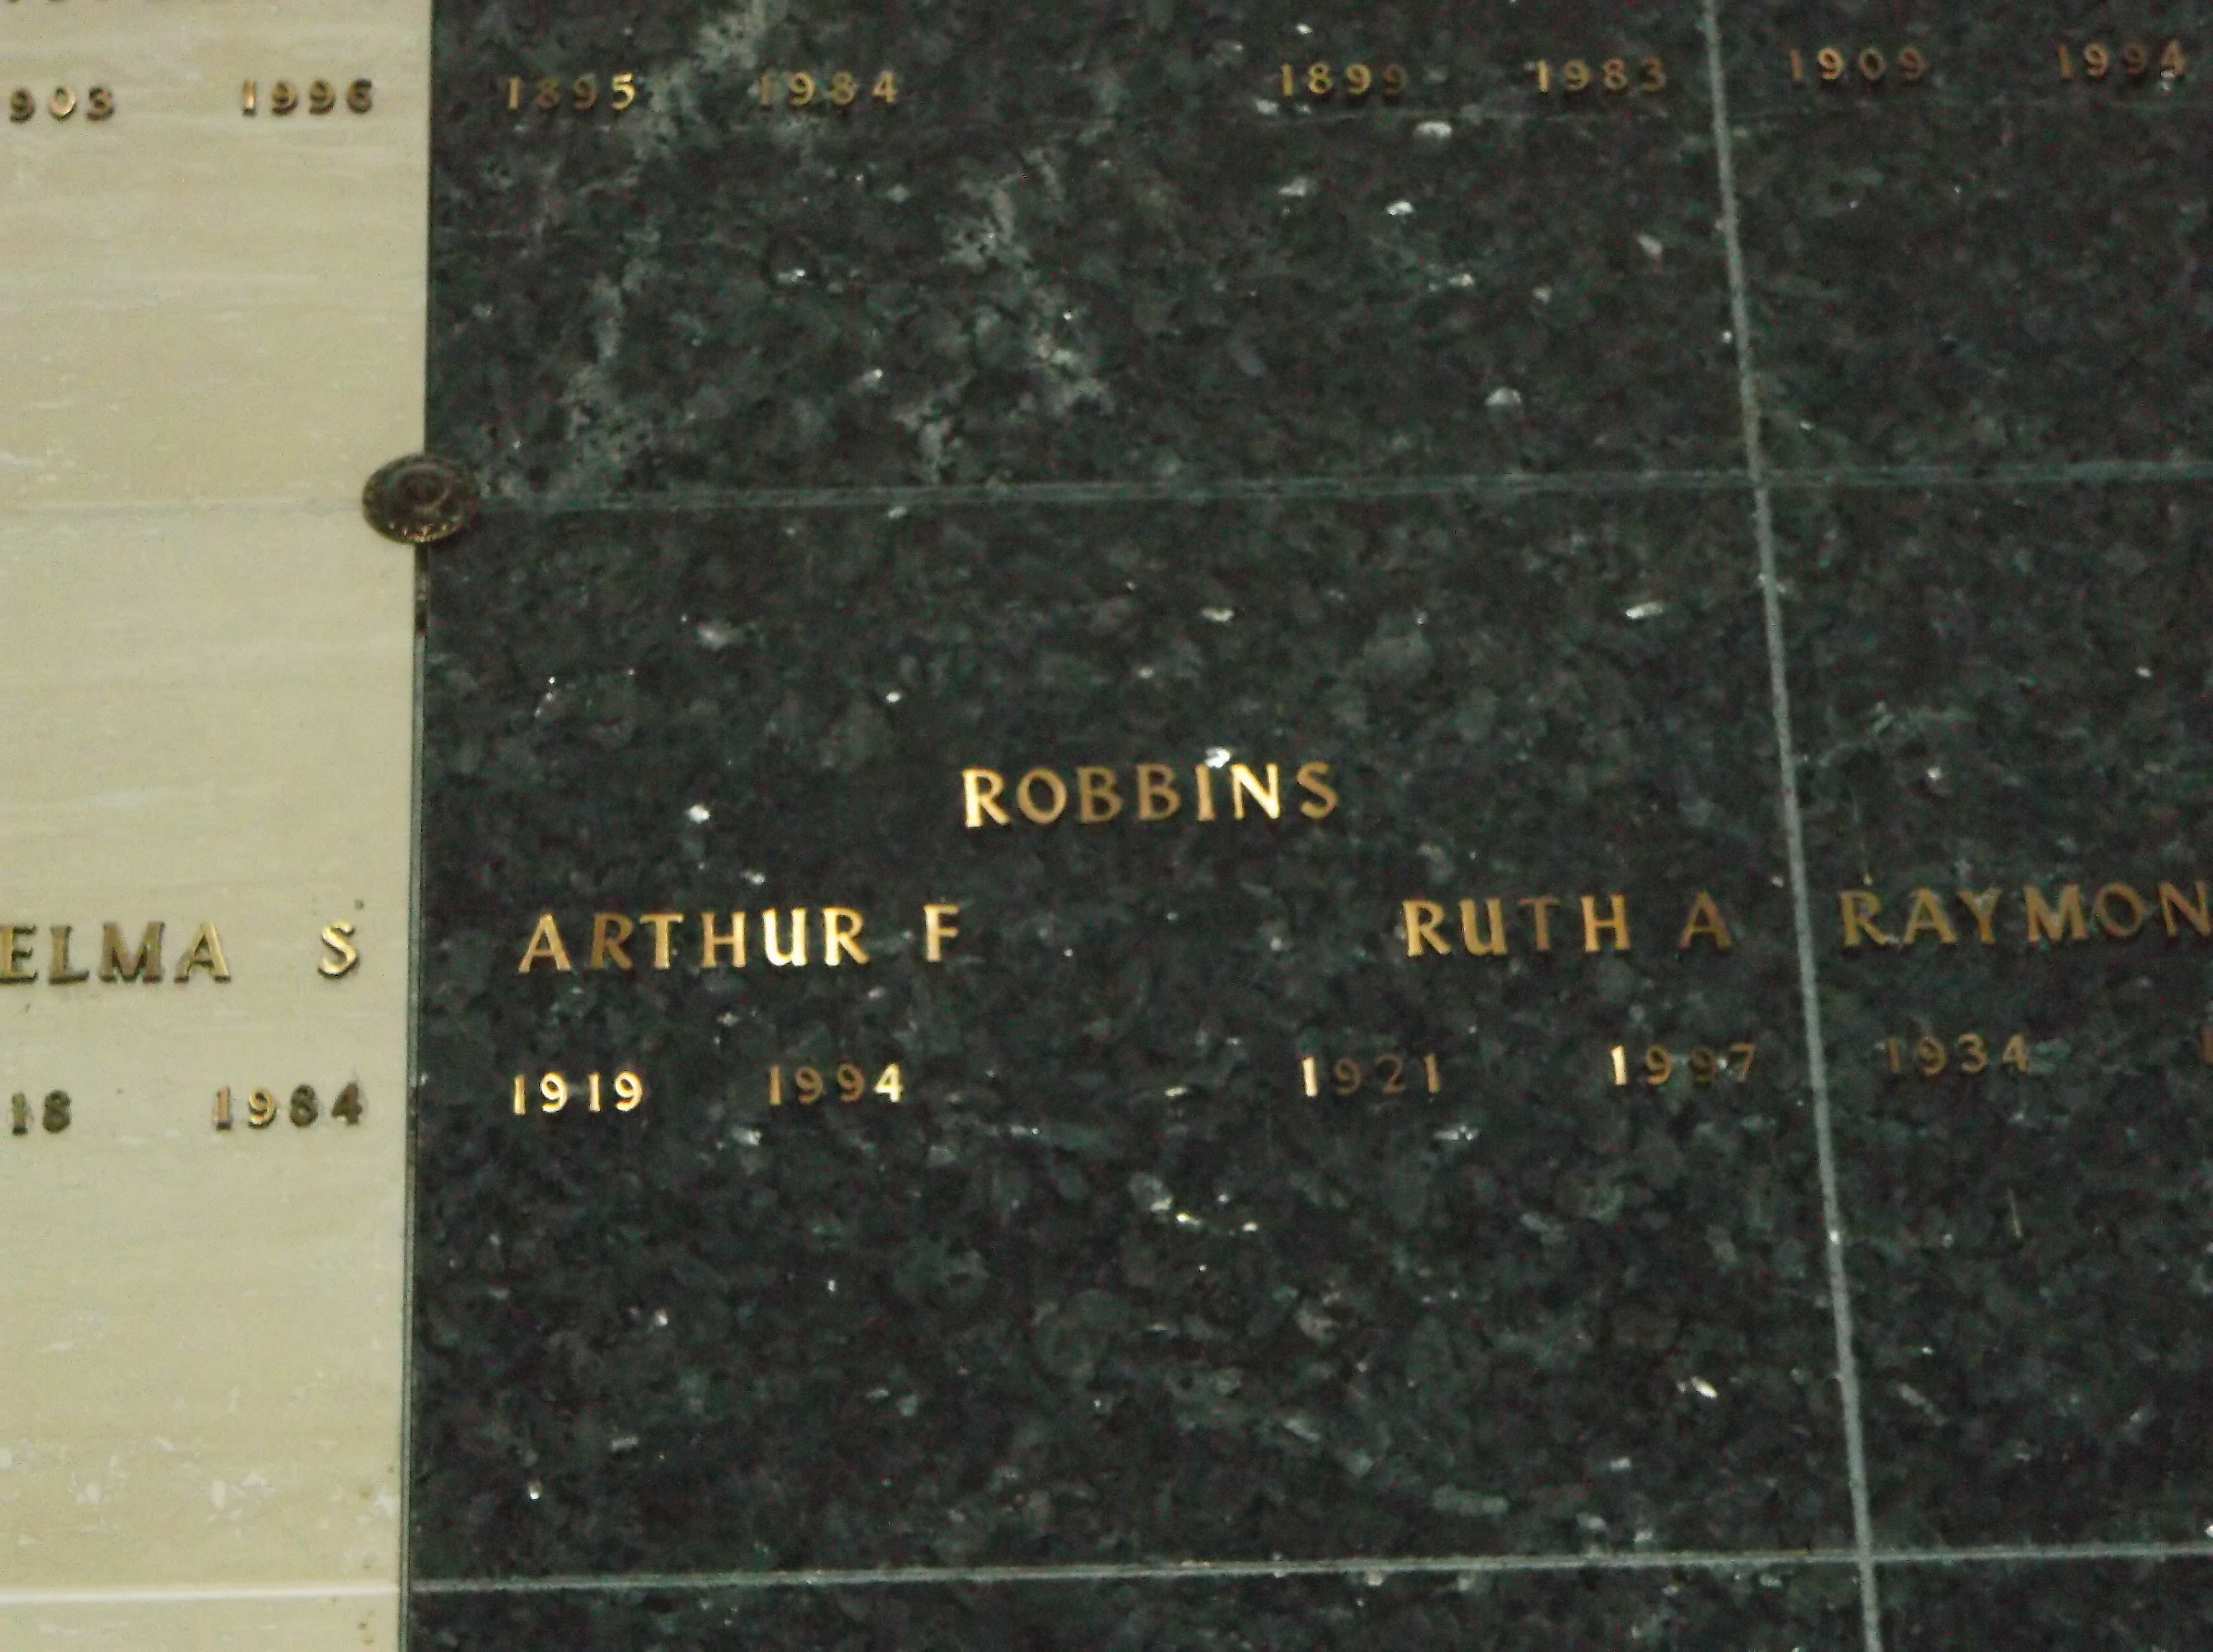 Arthur F Robbins